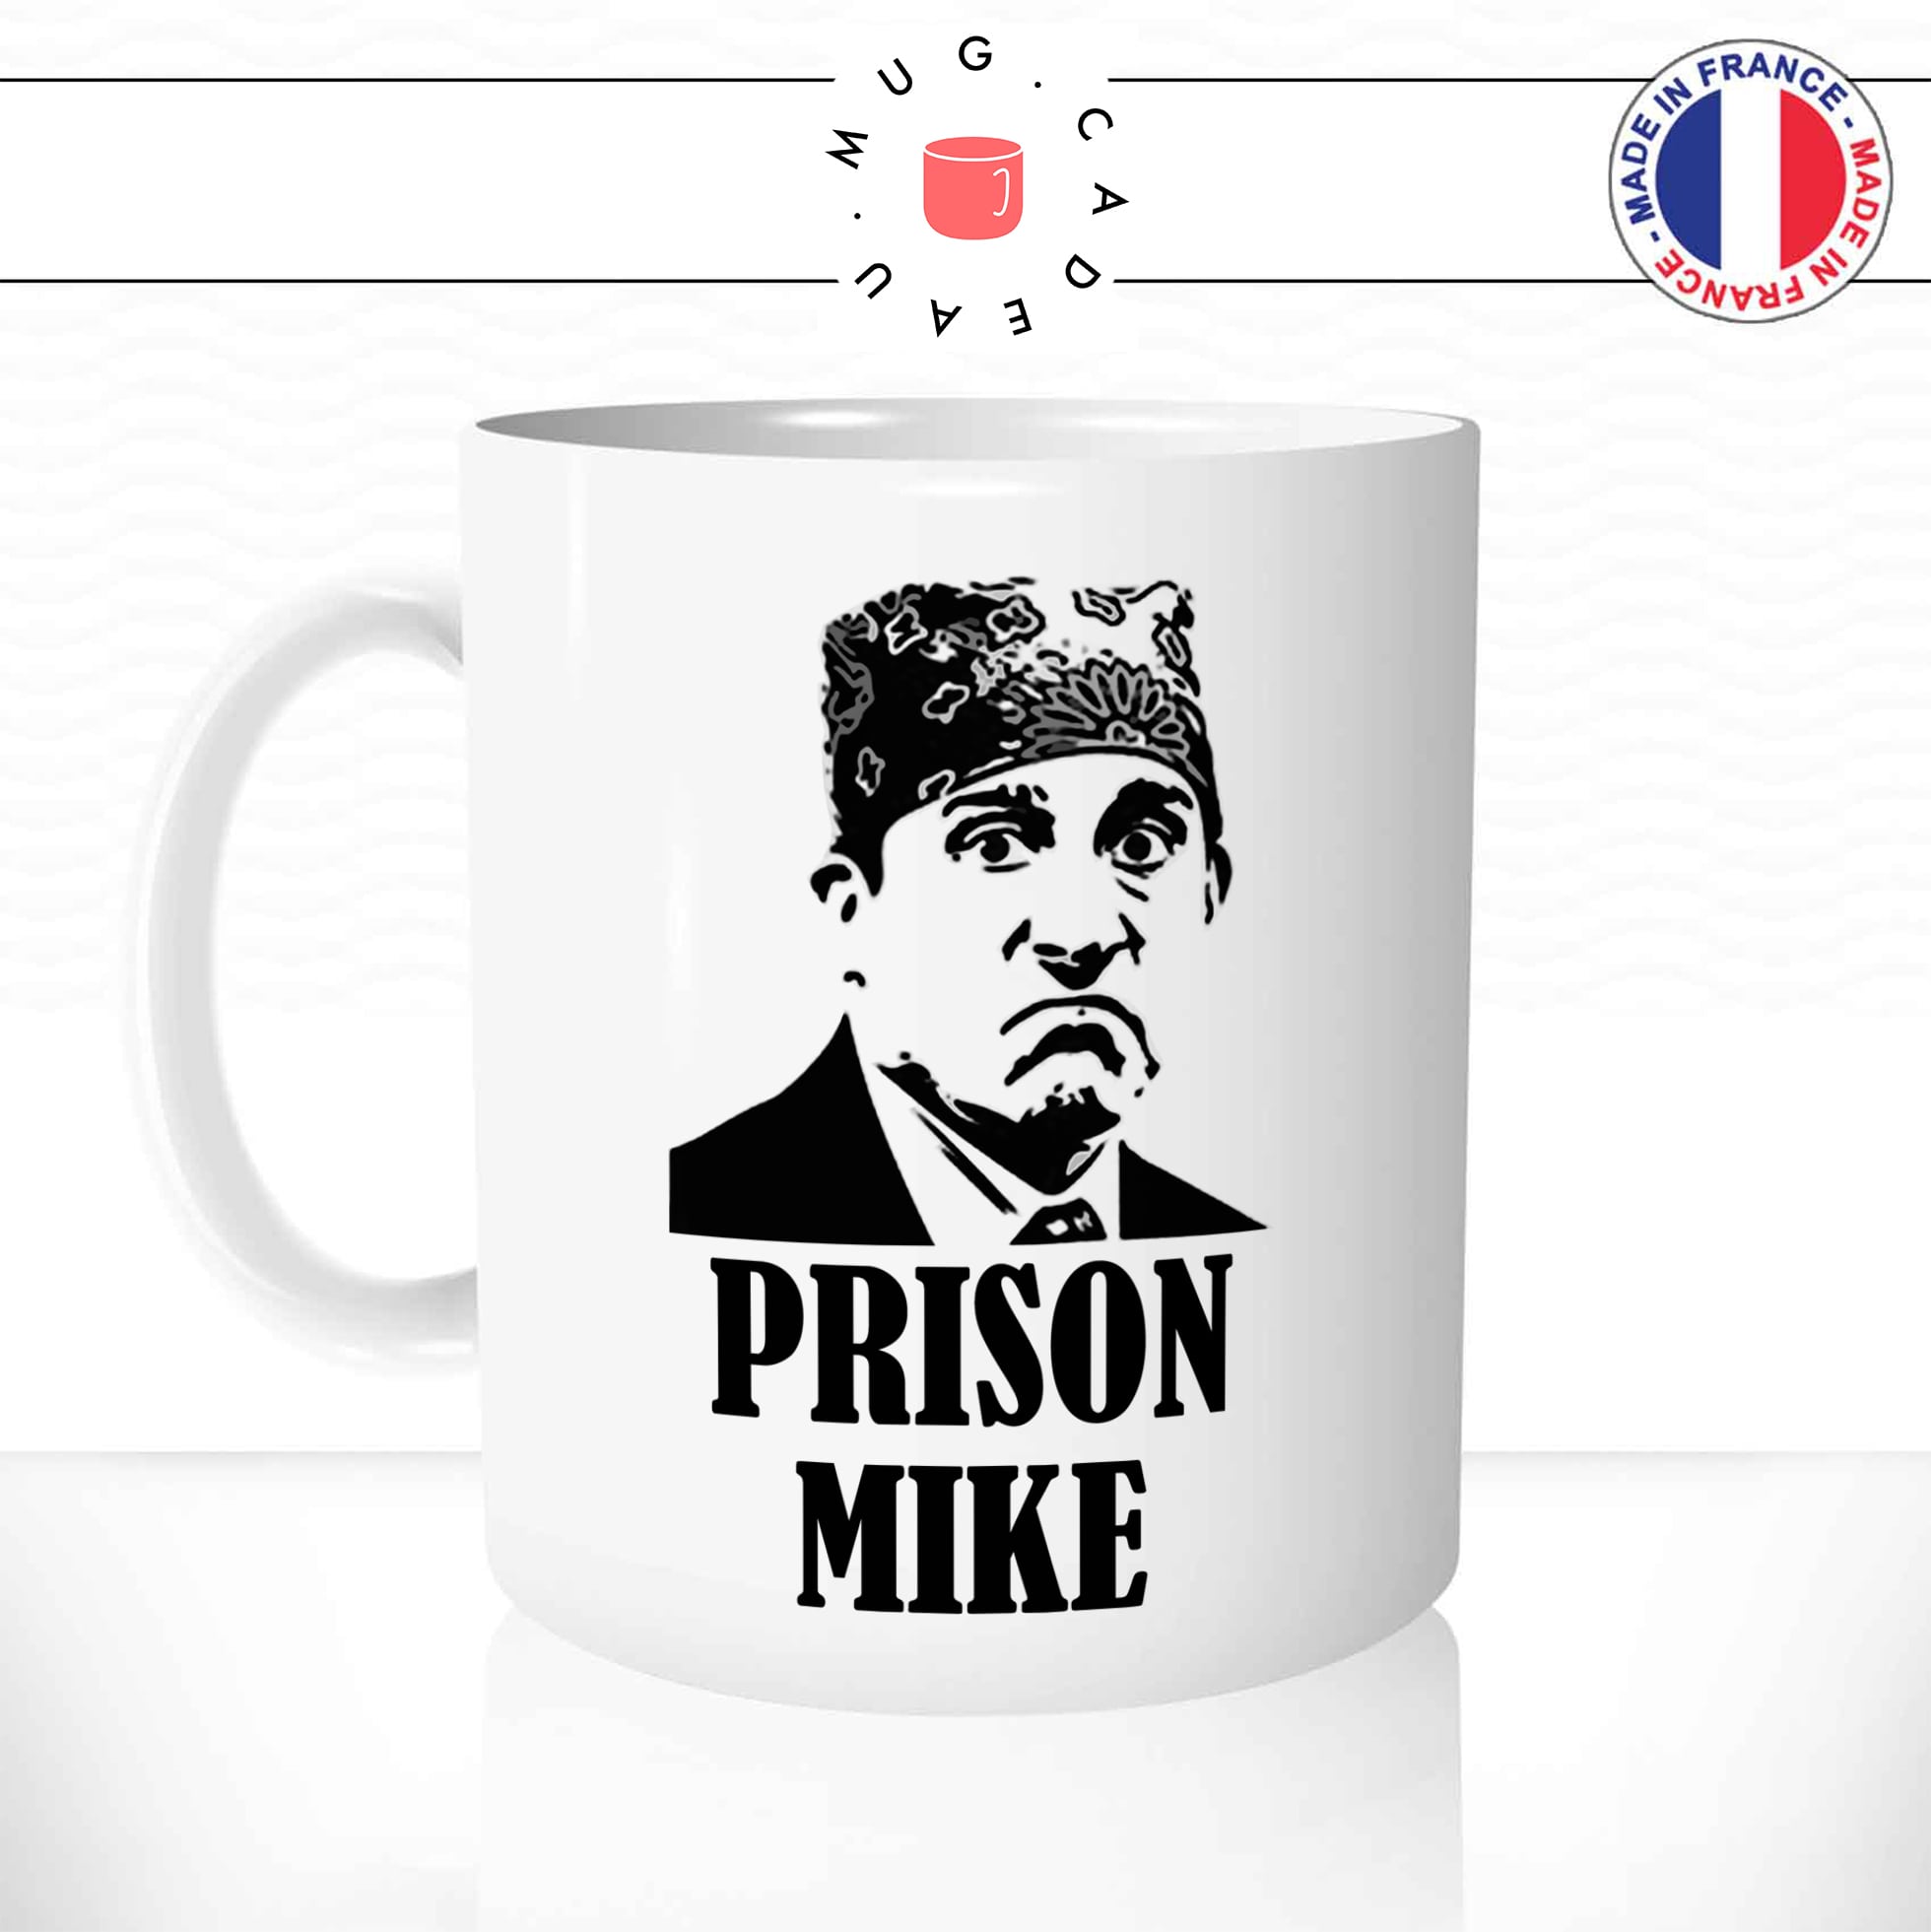 mug-tasse-the-office-série-prison-mike-michael-scott-bureau-boulot-humour-drole-fun-idée-cadeau-original-café-thé-personnalisée-min